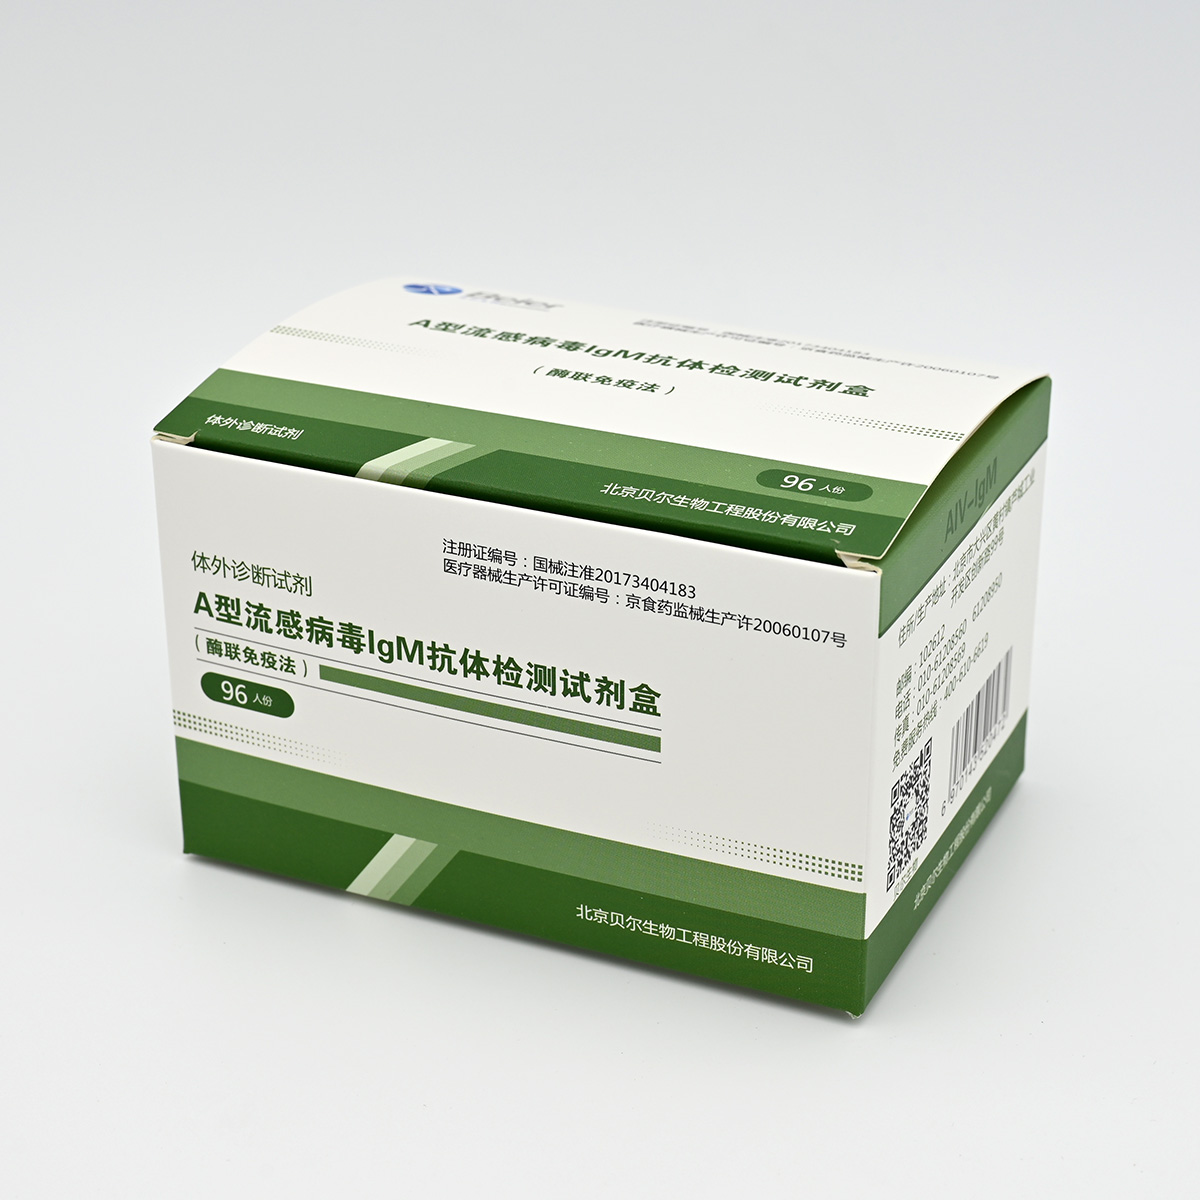 【贝尔】A型流感病毒IgM抗体检测试剂盒(酶联免疫法)